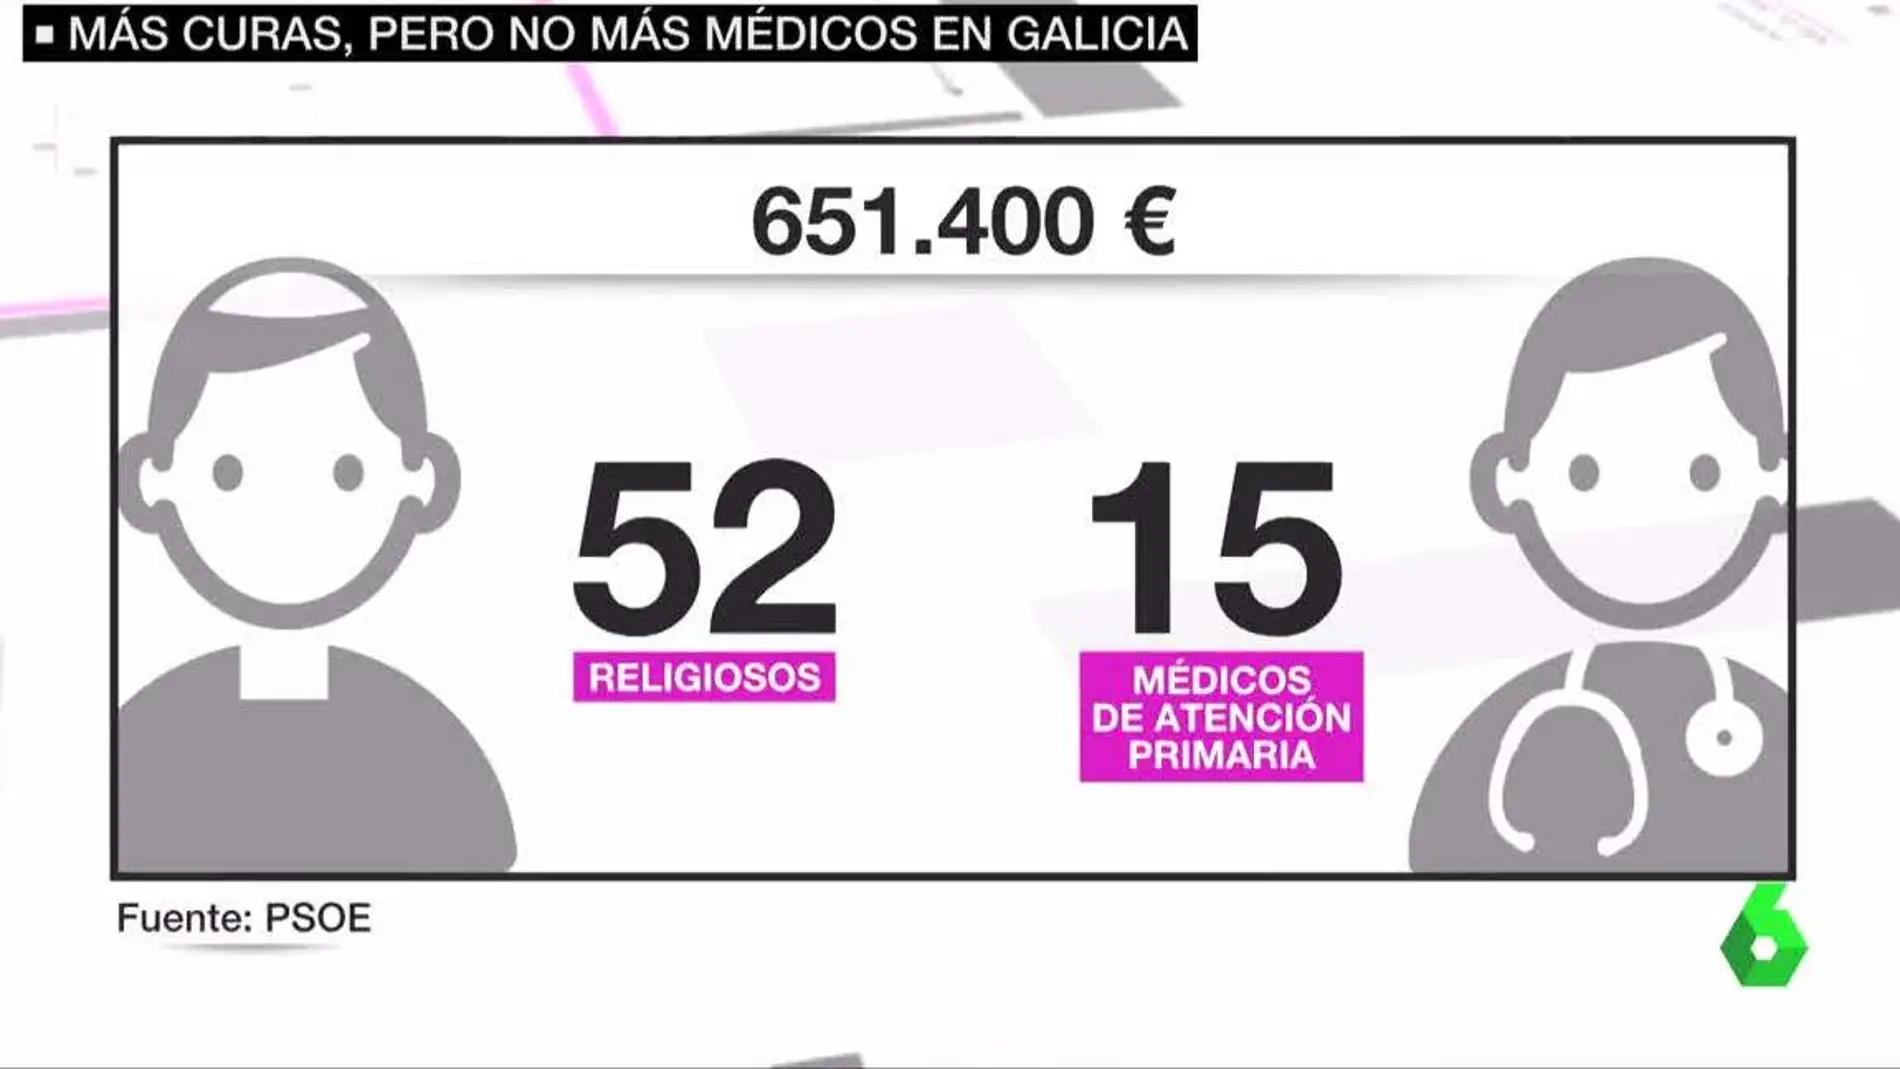 El coste de mantener al personal religioso en hospitales de Galicia